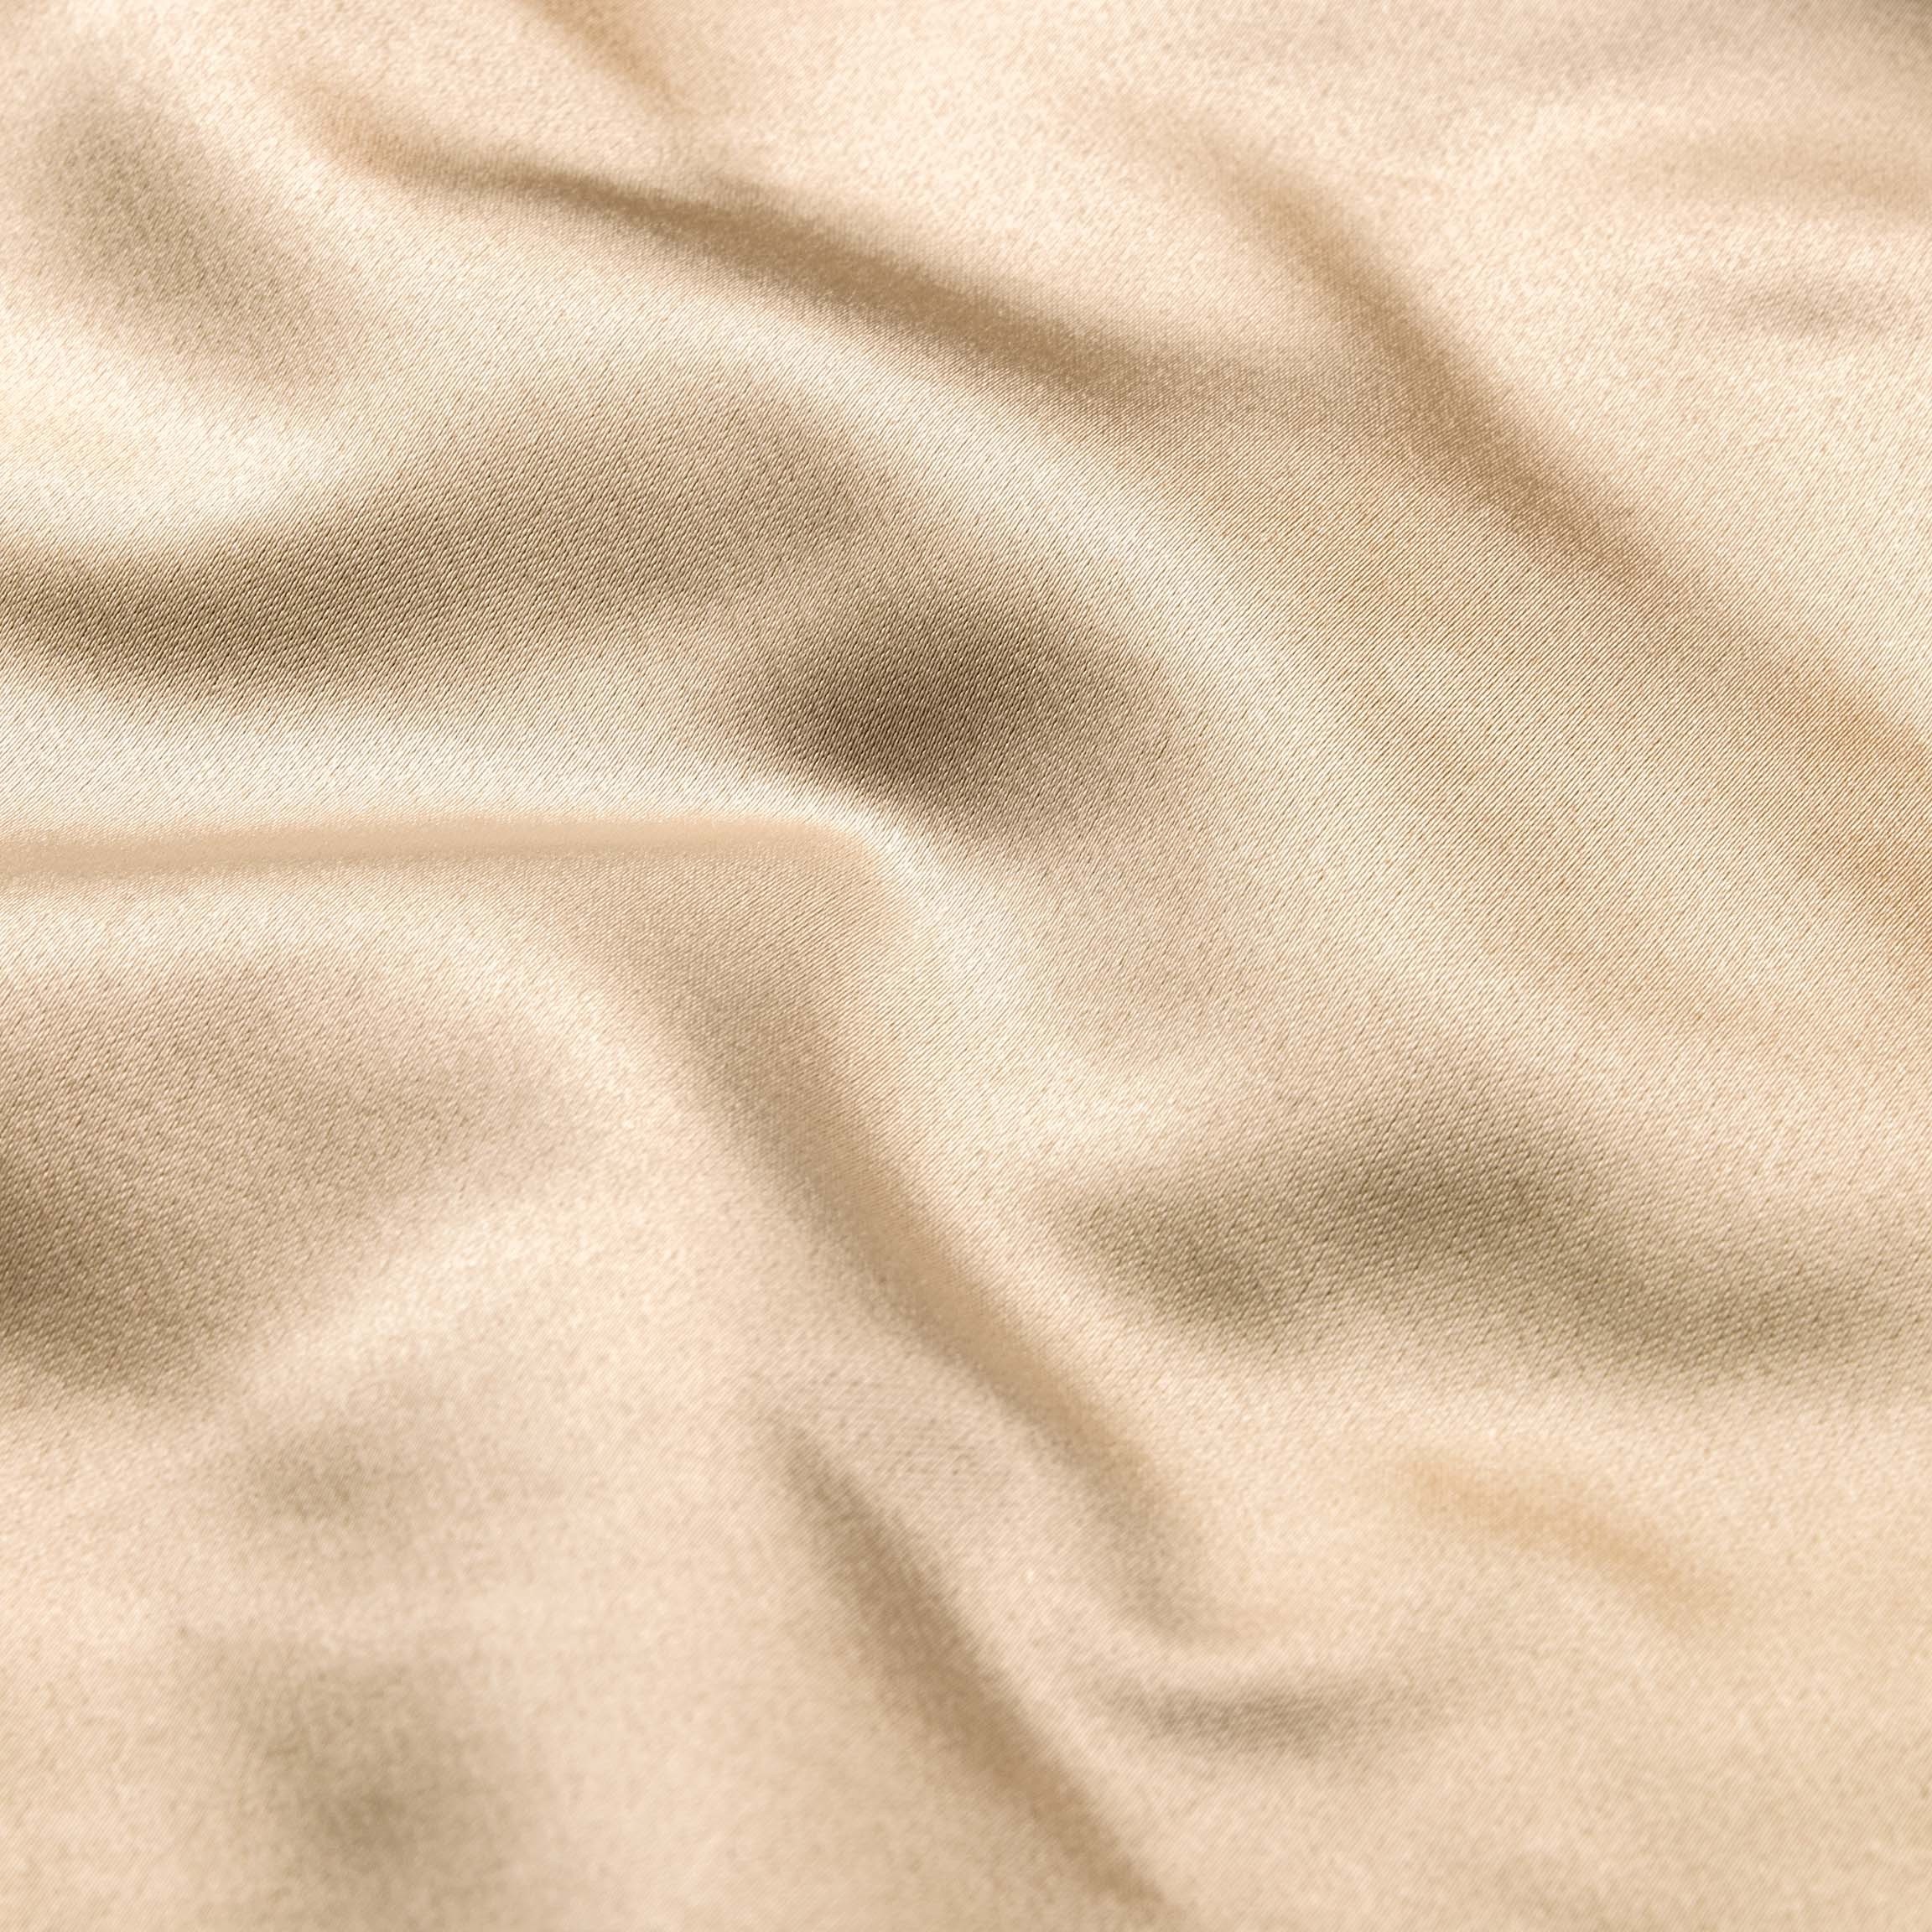  Портьерная ткань MONTREAL CREAM, ширина 280 см  - Фото